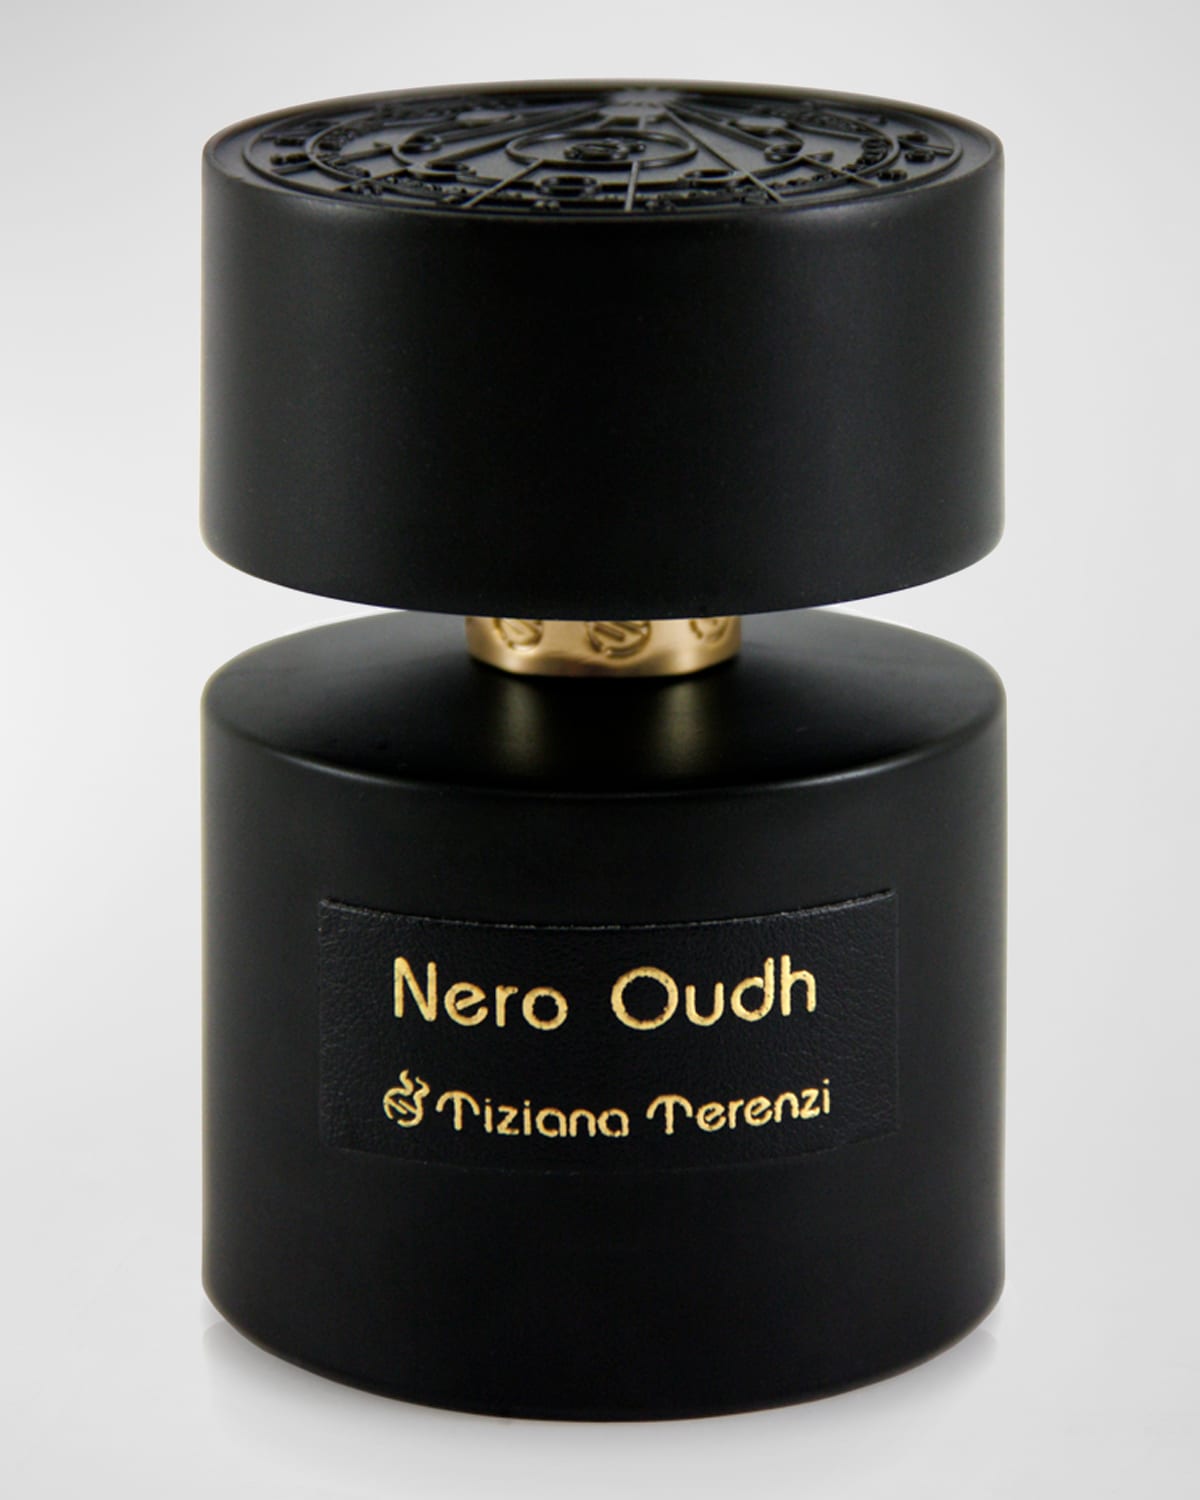 3.4 oz. Nero Oudh Extrait de Parfum